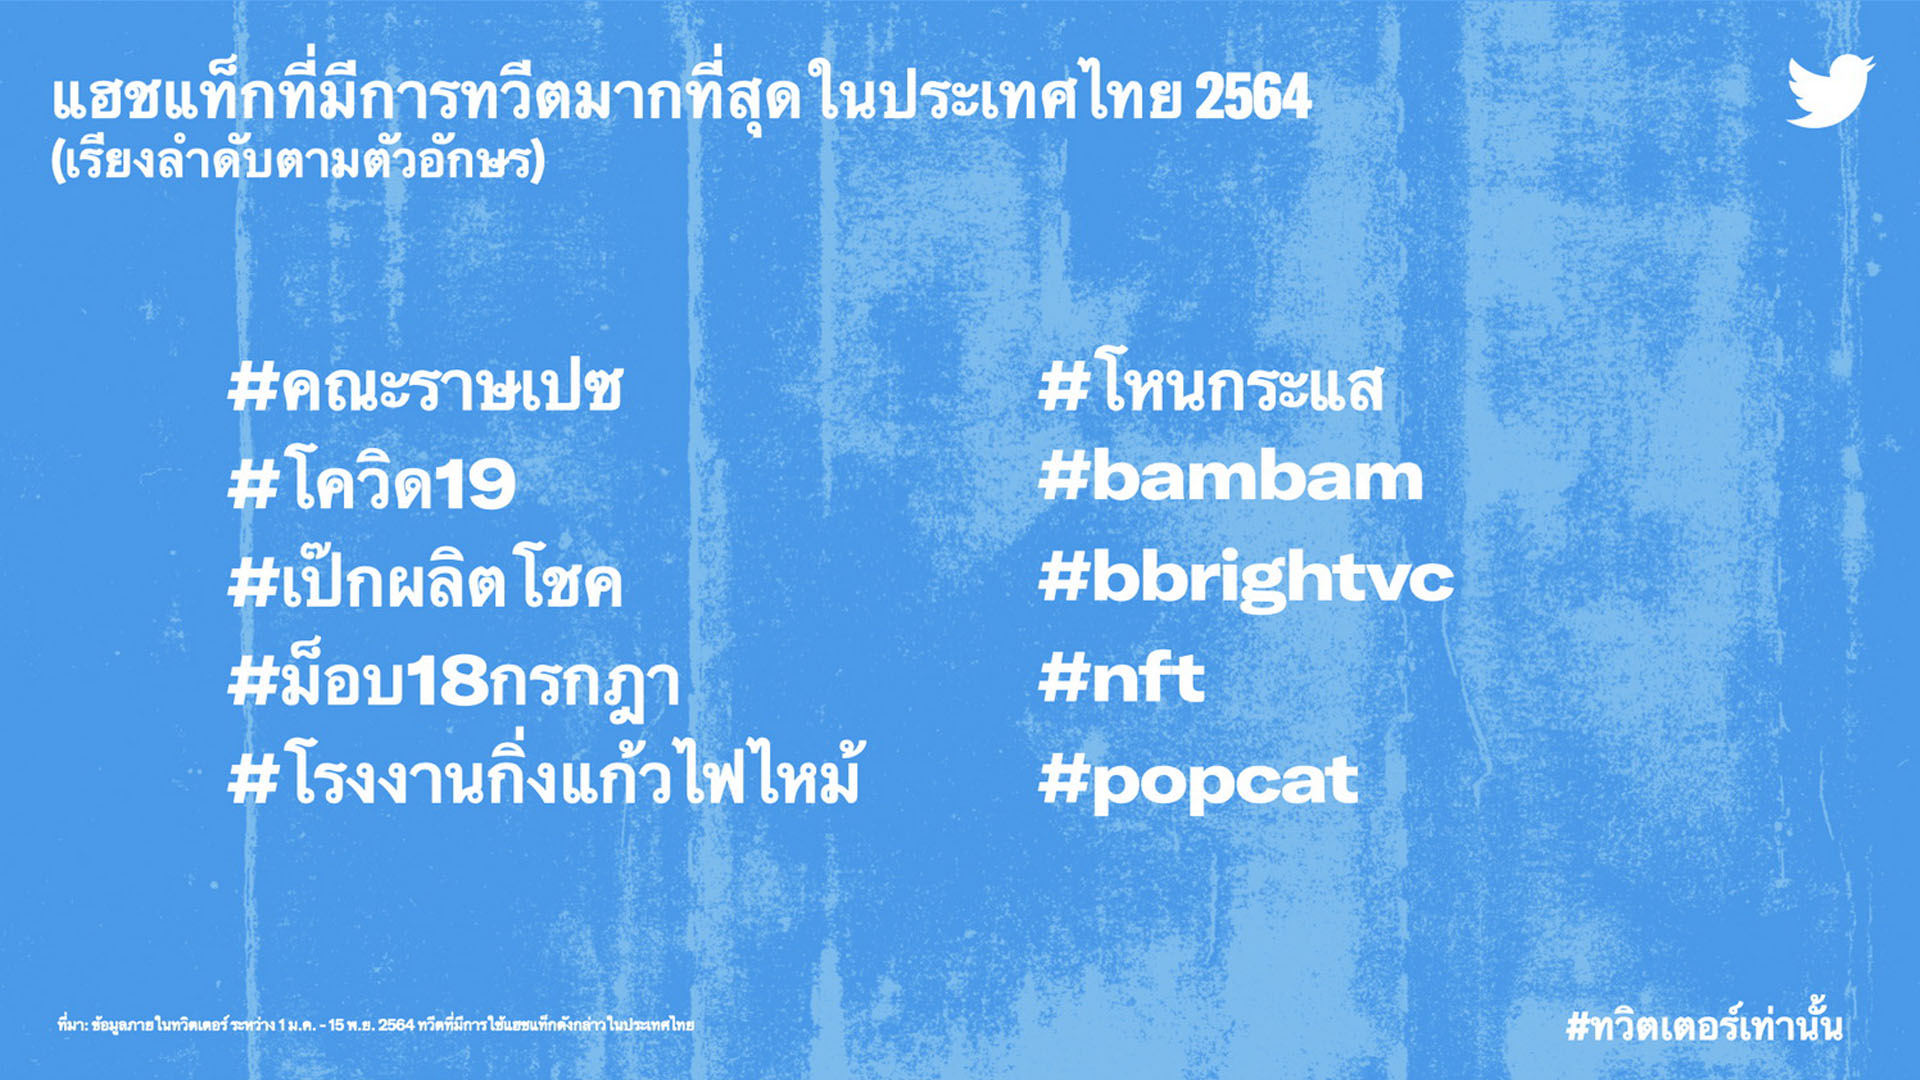 เผยที่สุดแห่งปี 2564 บน #ทวิตเตอร์เท่านั้น พลังการเชื่อมต่อของชาวทวิตภพประเทศไทย